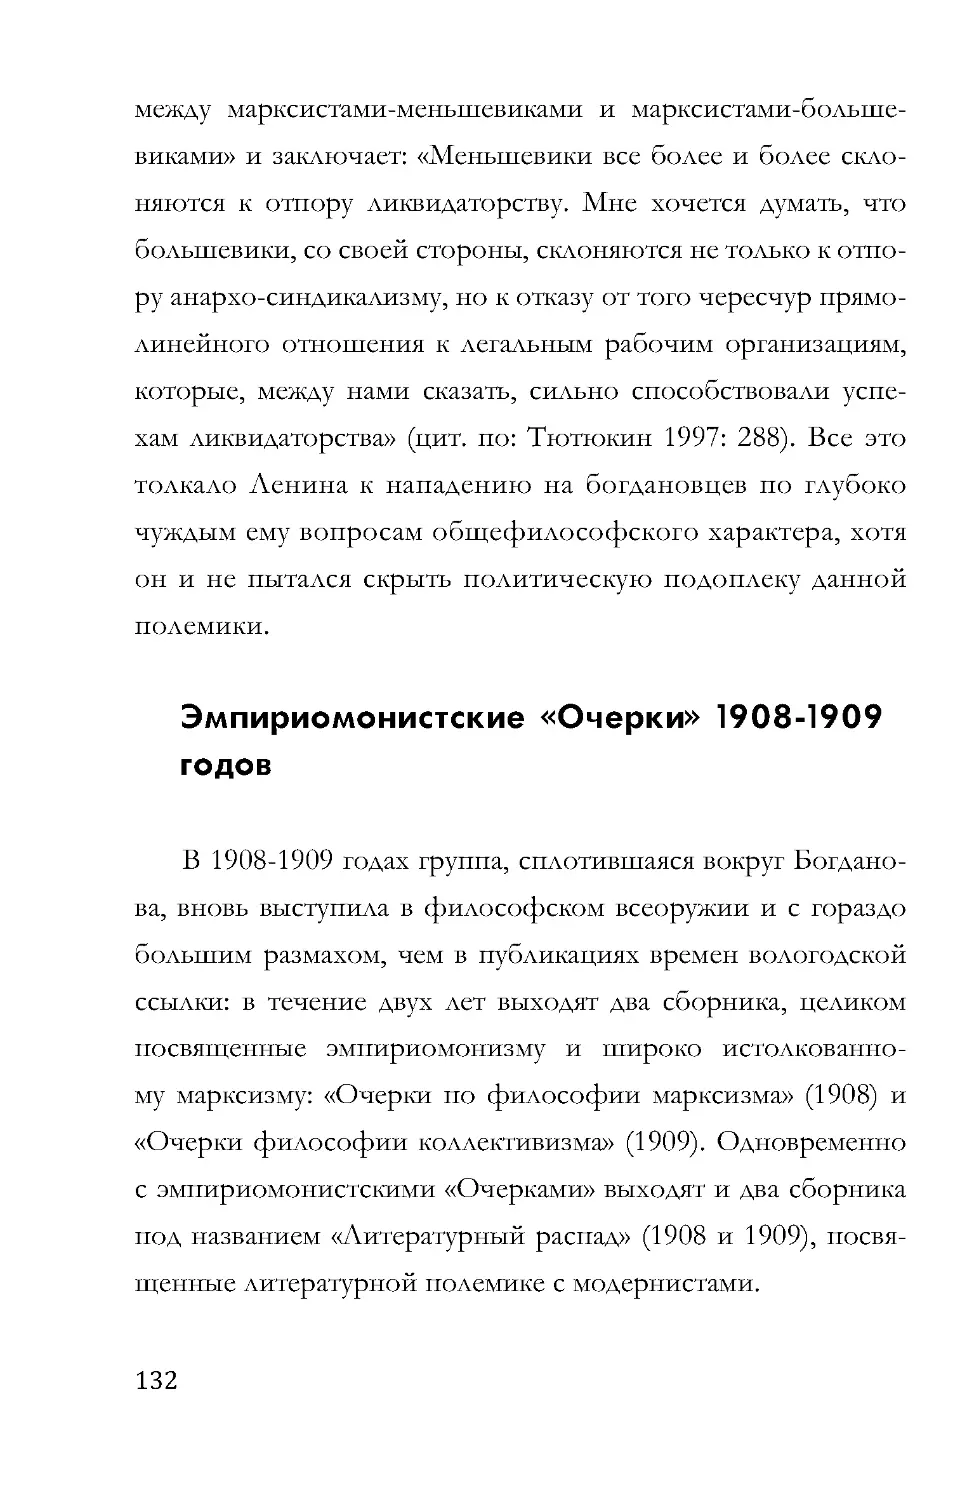 Эмпириомонистские «Очерки» 1908-1909 годов